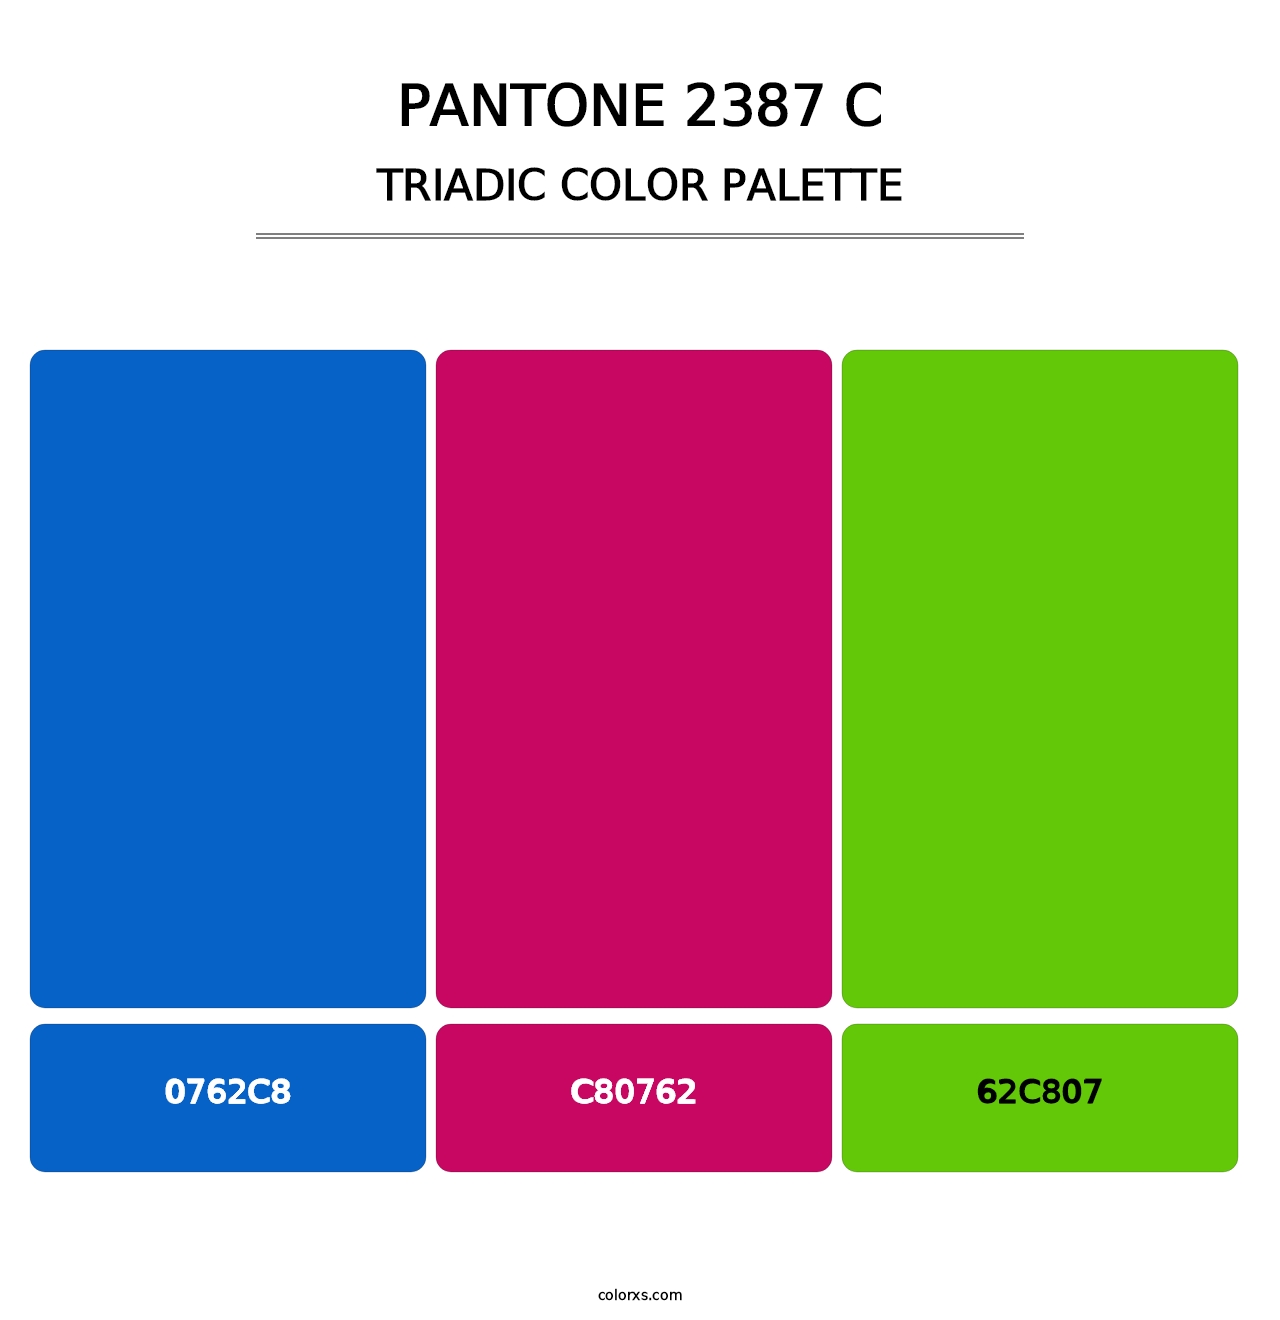 PANTONE 2387 C - Triadic Color Palette